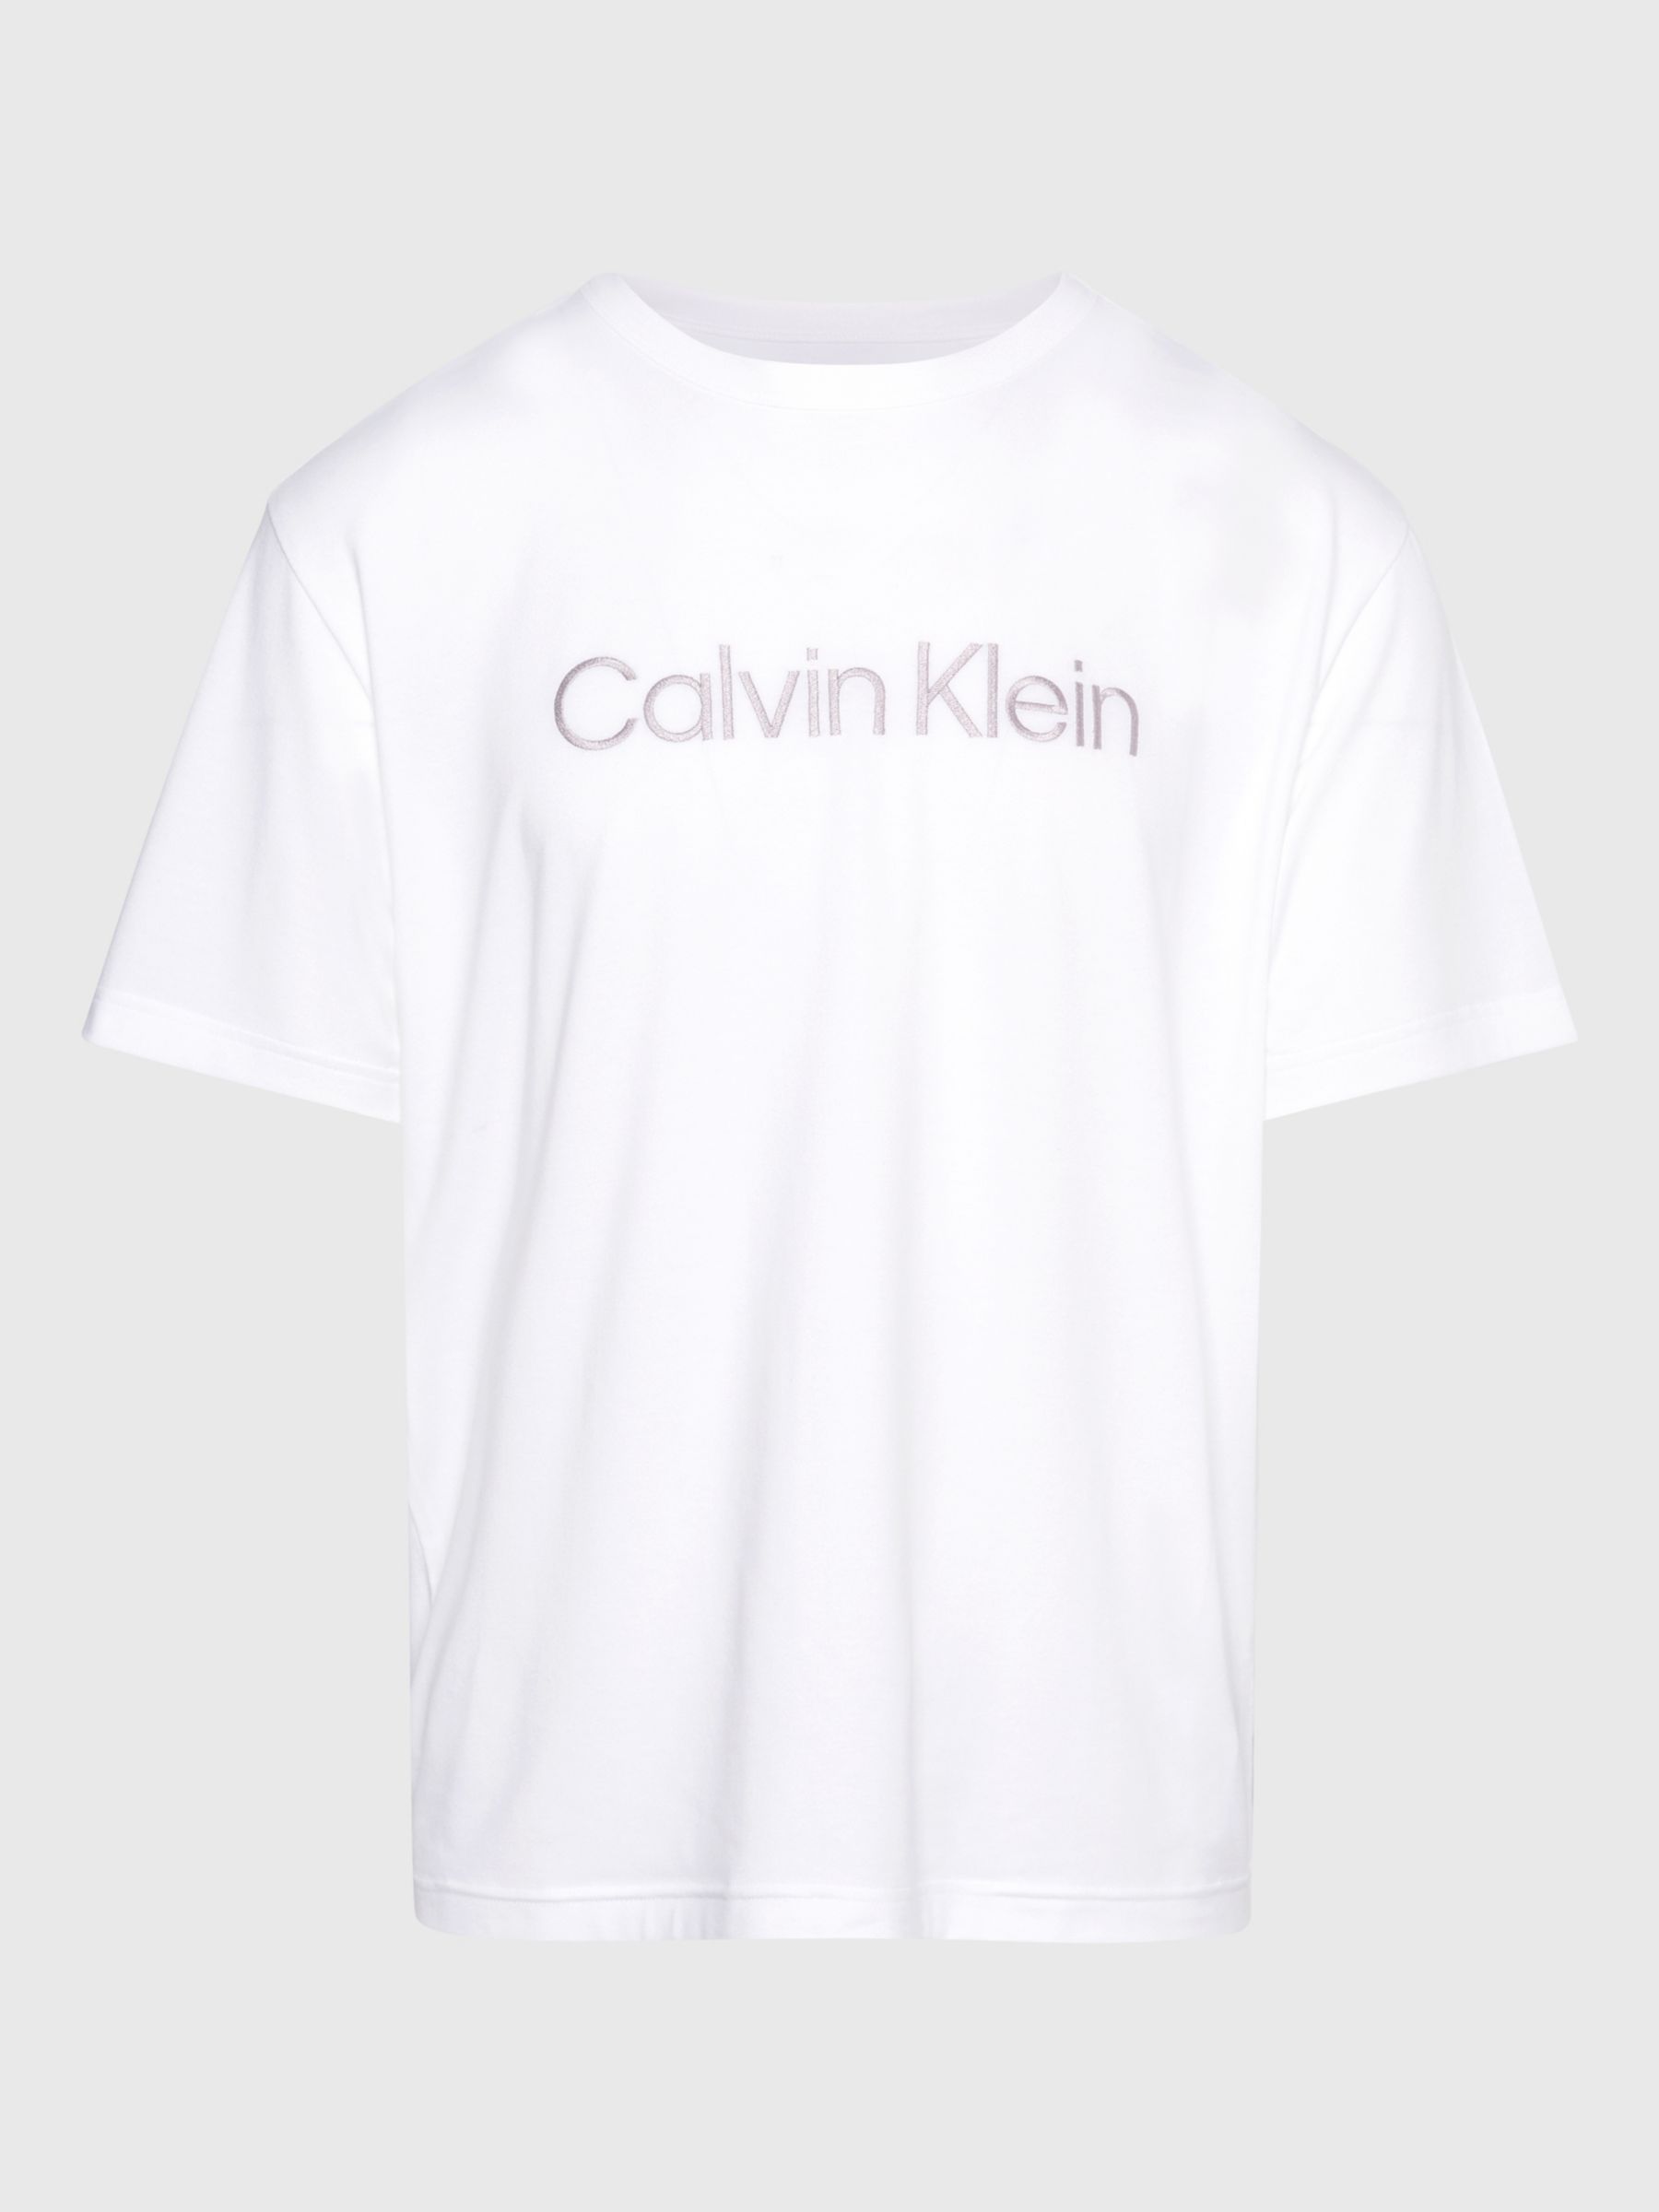 Calvin Klein Slogan Crew Neck Lounge Top, White, L